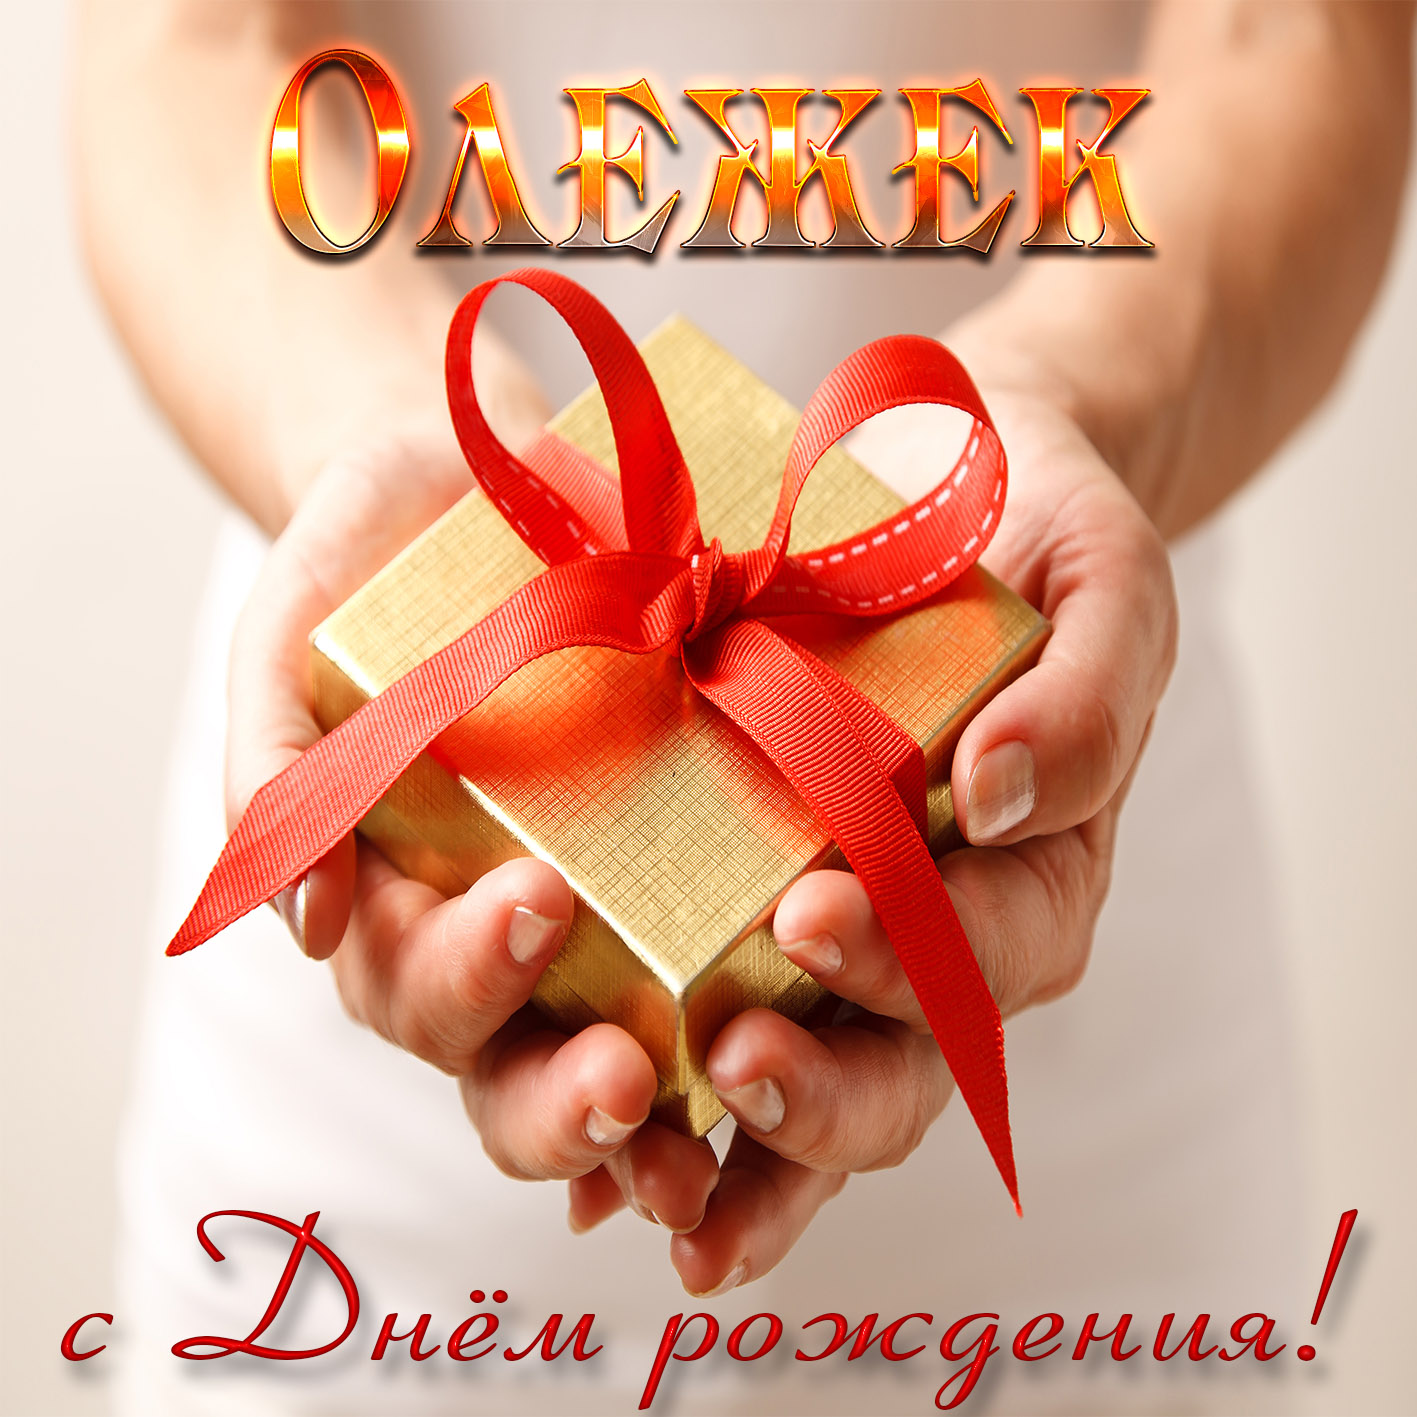 Картинка с подарком в женских руках Олегу на День рождения